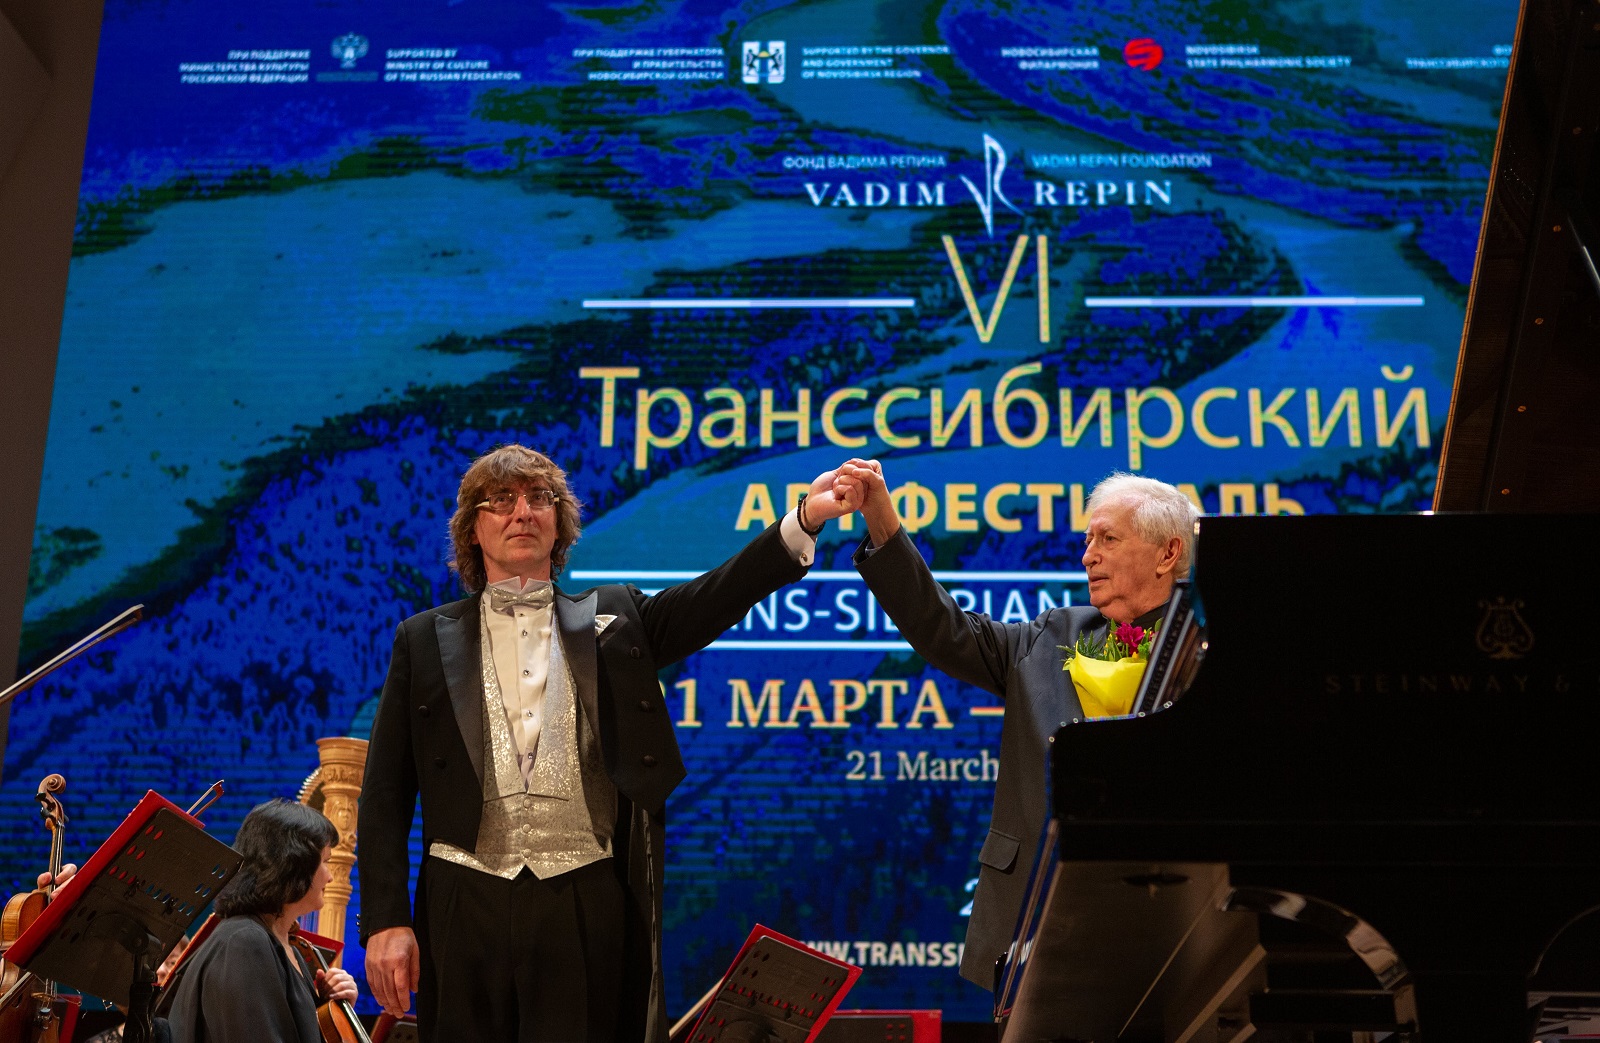 В Новосибирске открылся VI Транссибирский Арт Фестиваль